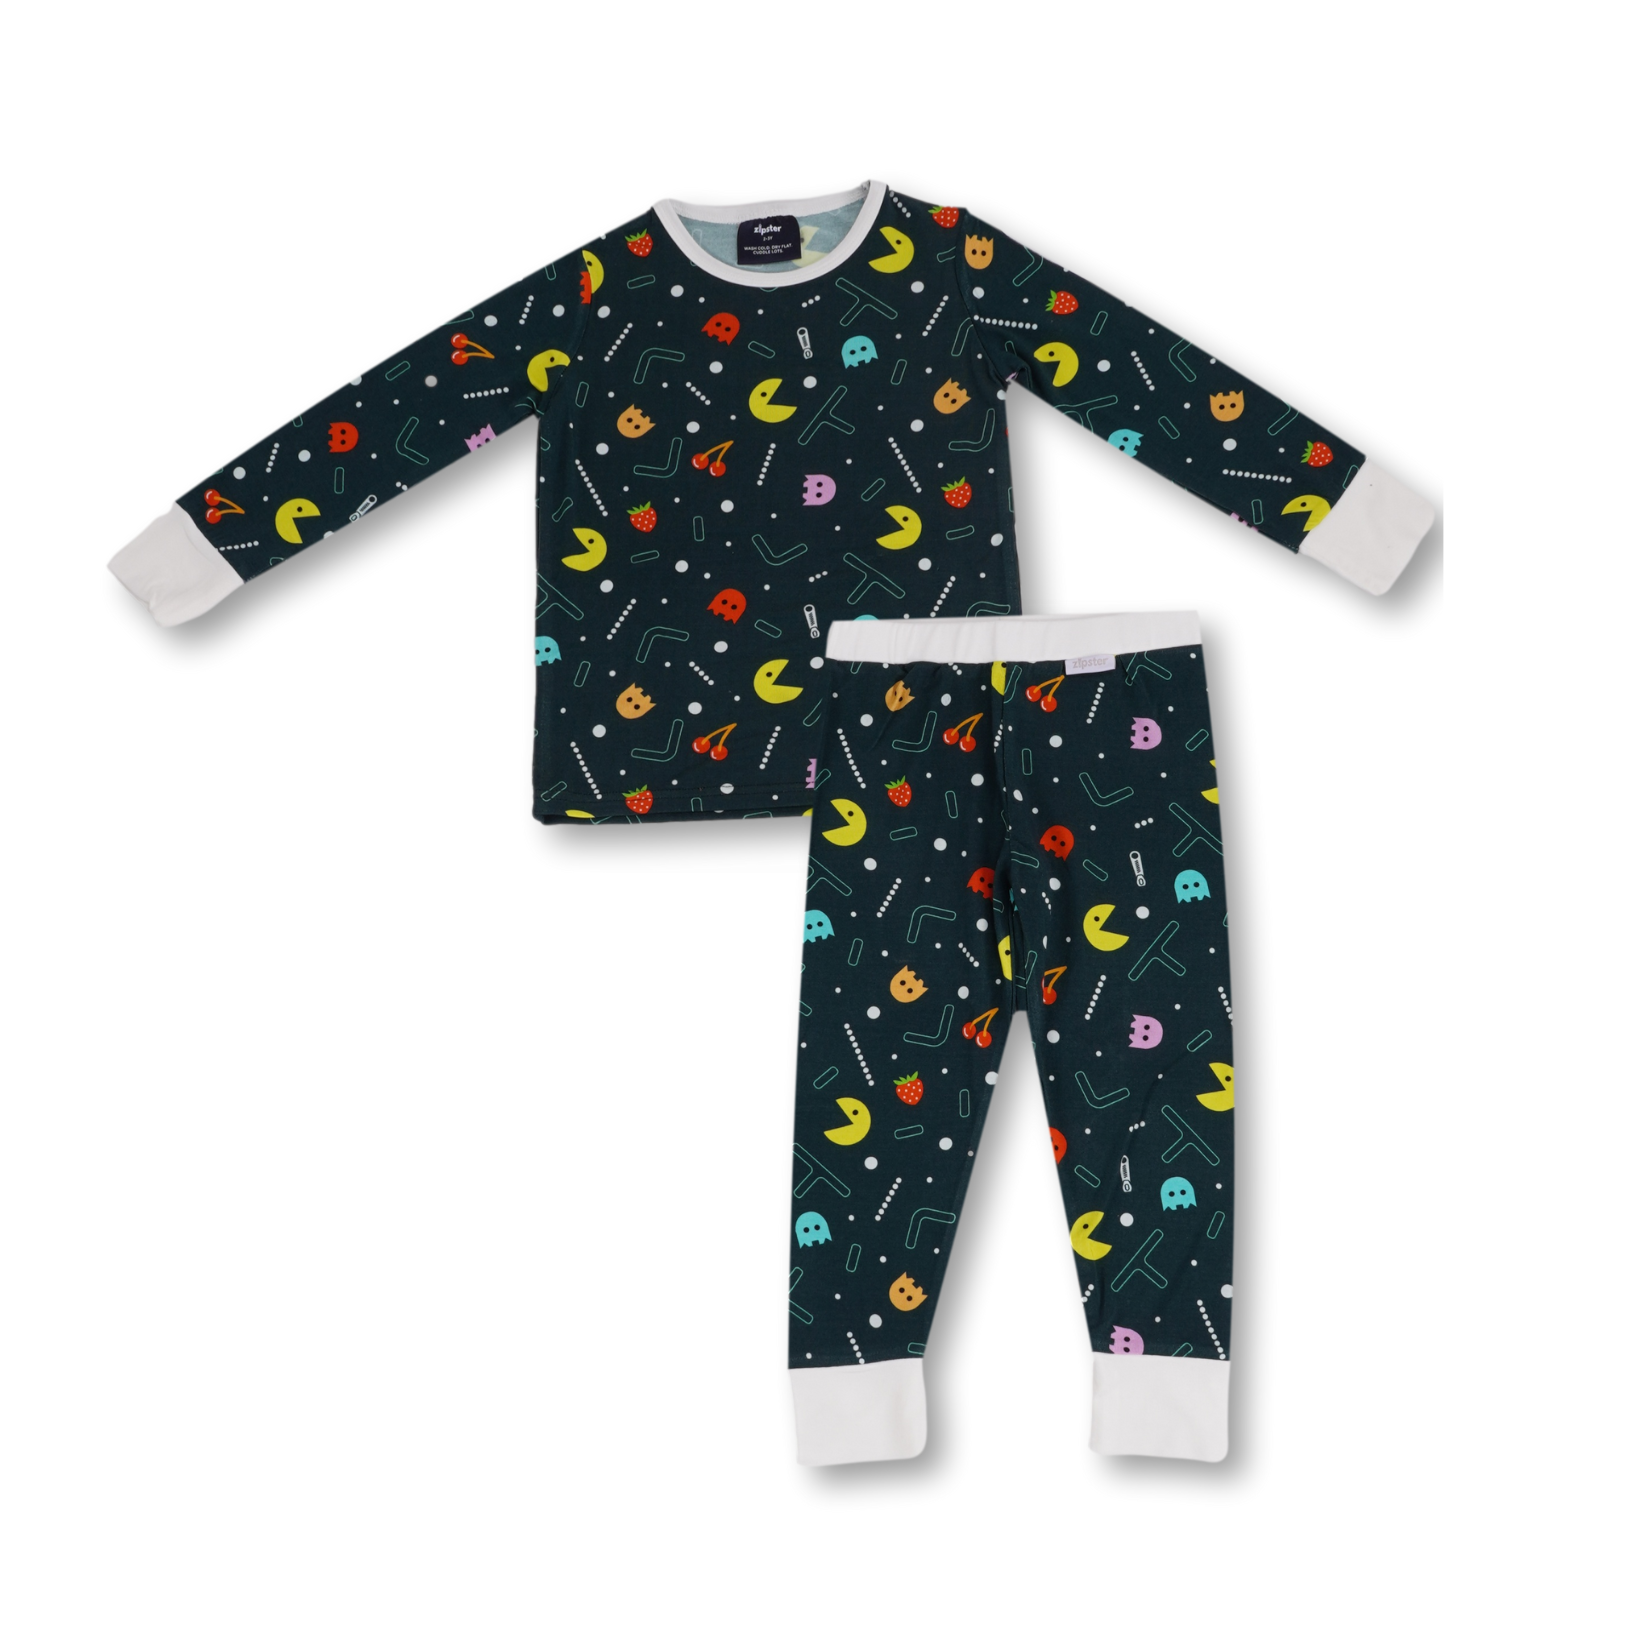 Pijama infantil Pacman